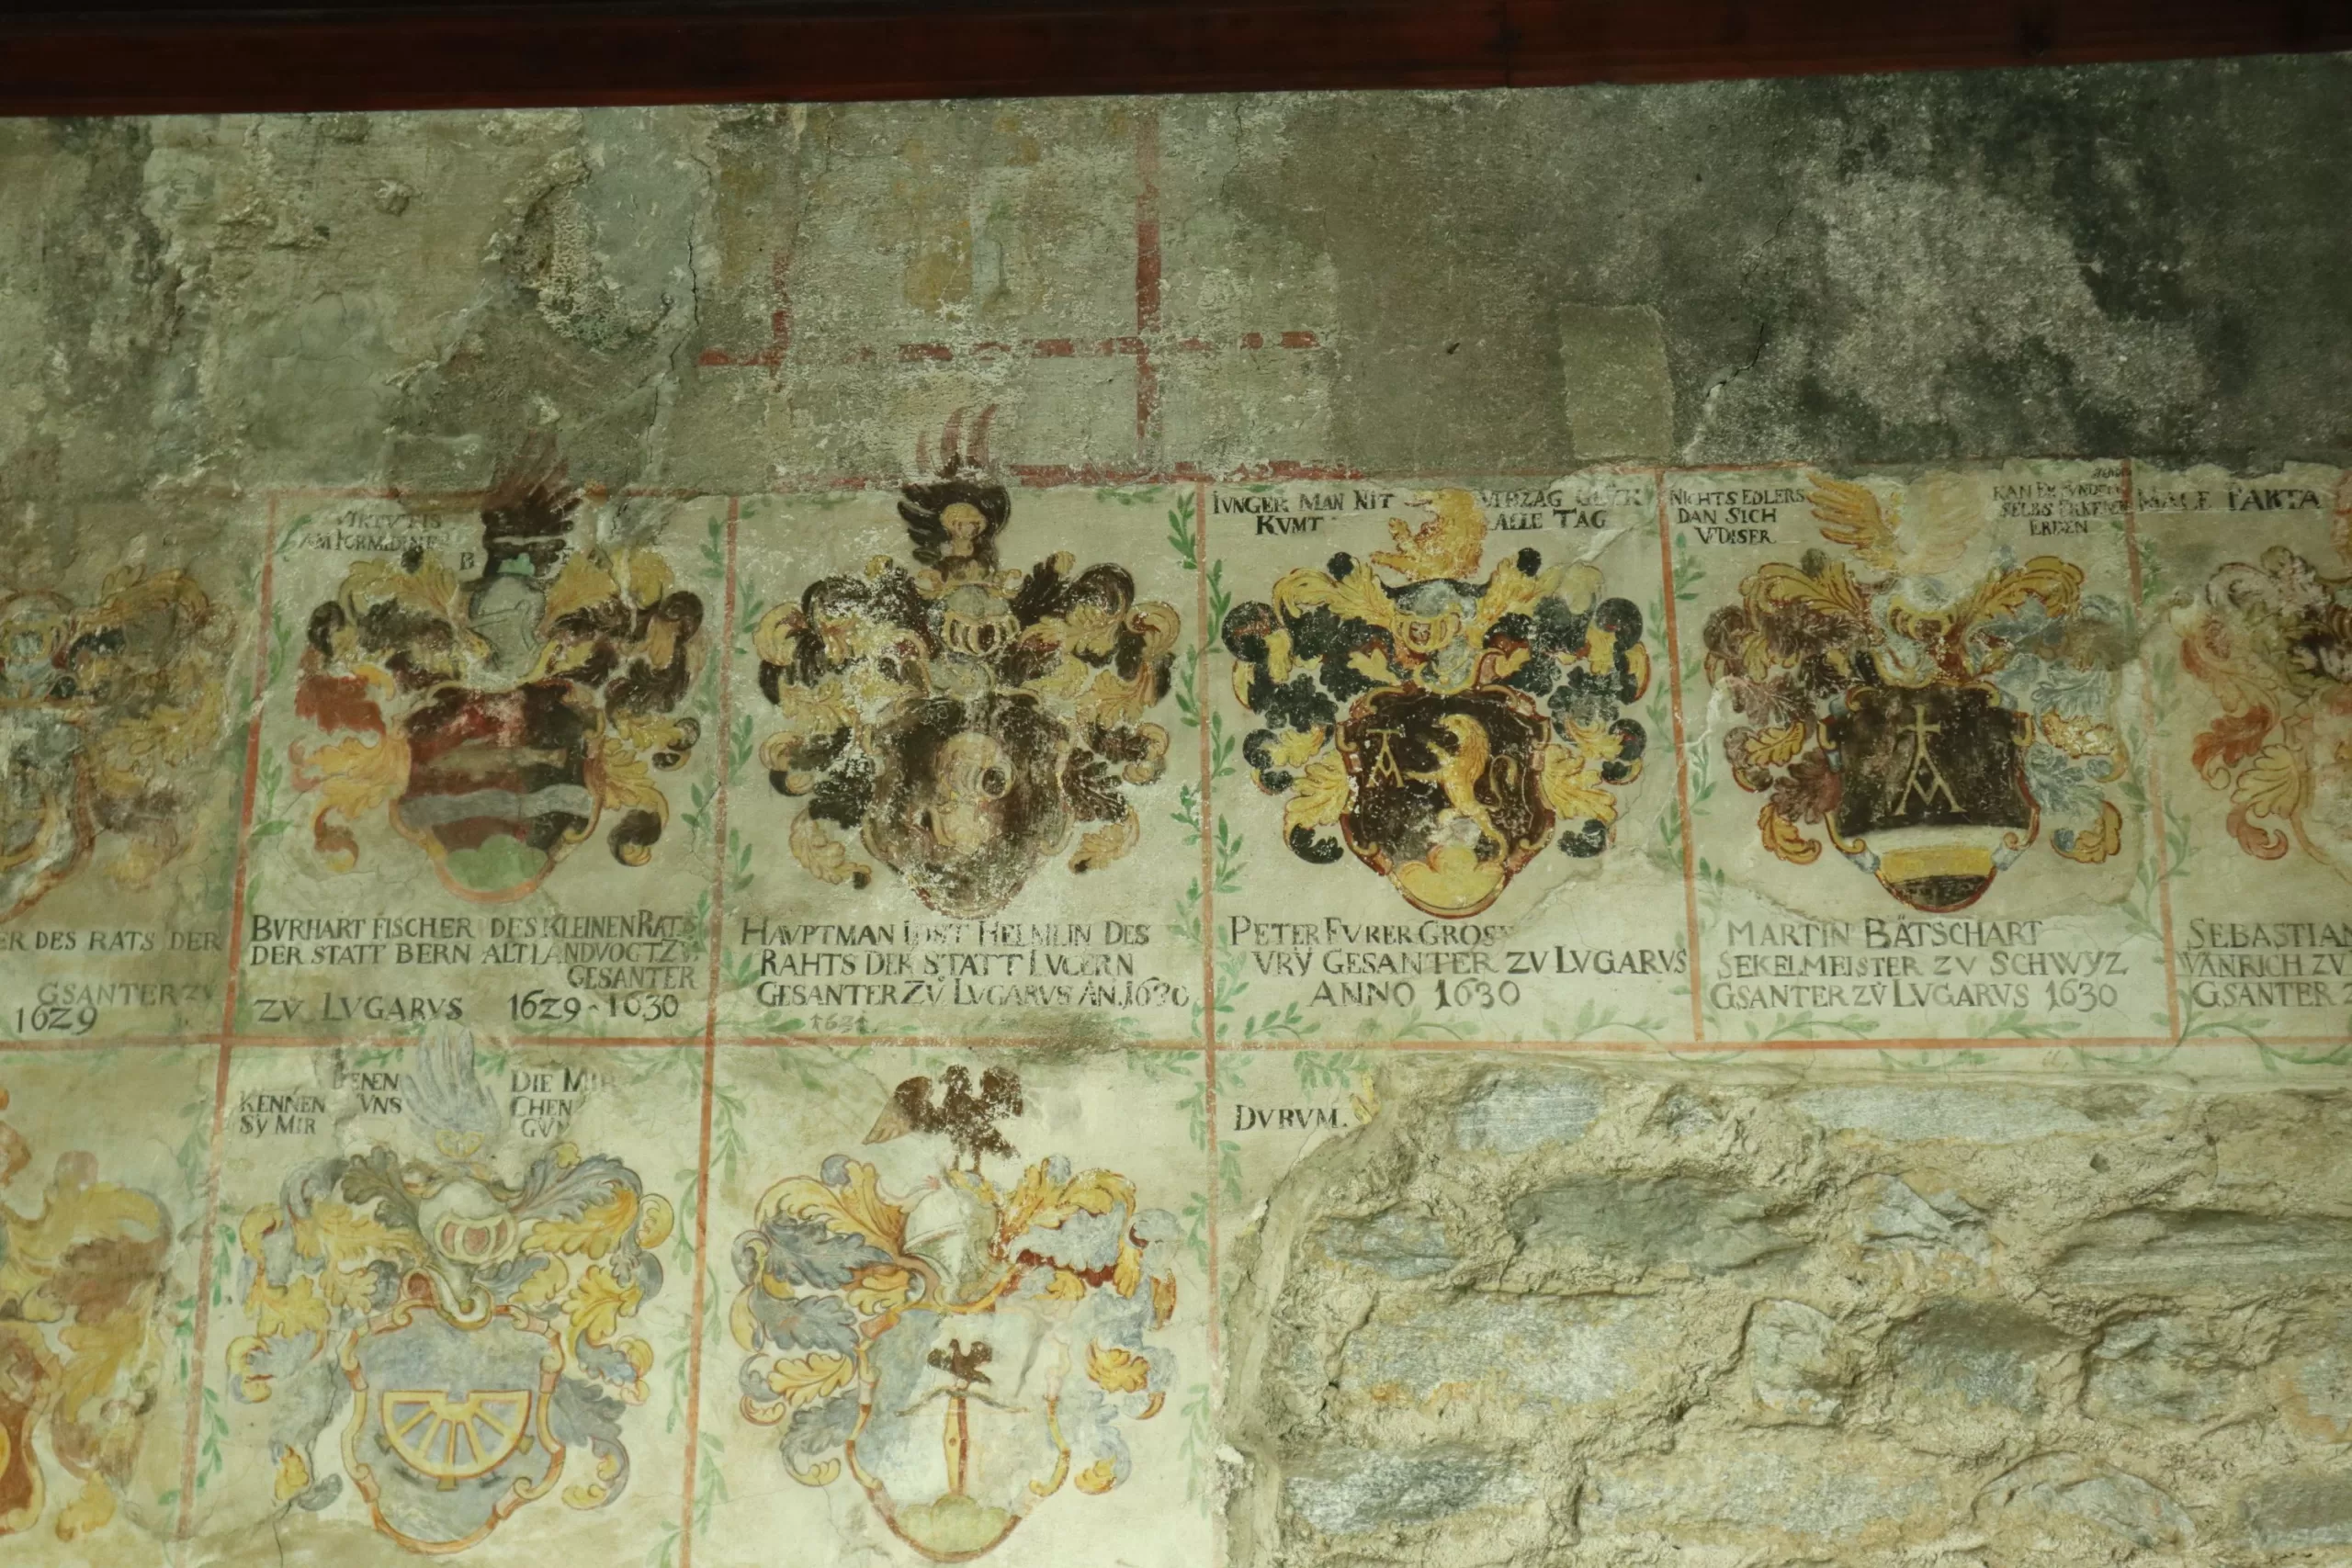 Detailaufnahme einer Wand im Castello. Darauf sind Wappen zu erkennen und Inschriften.